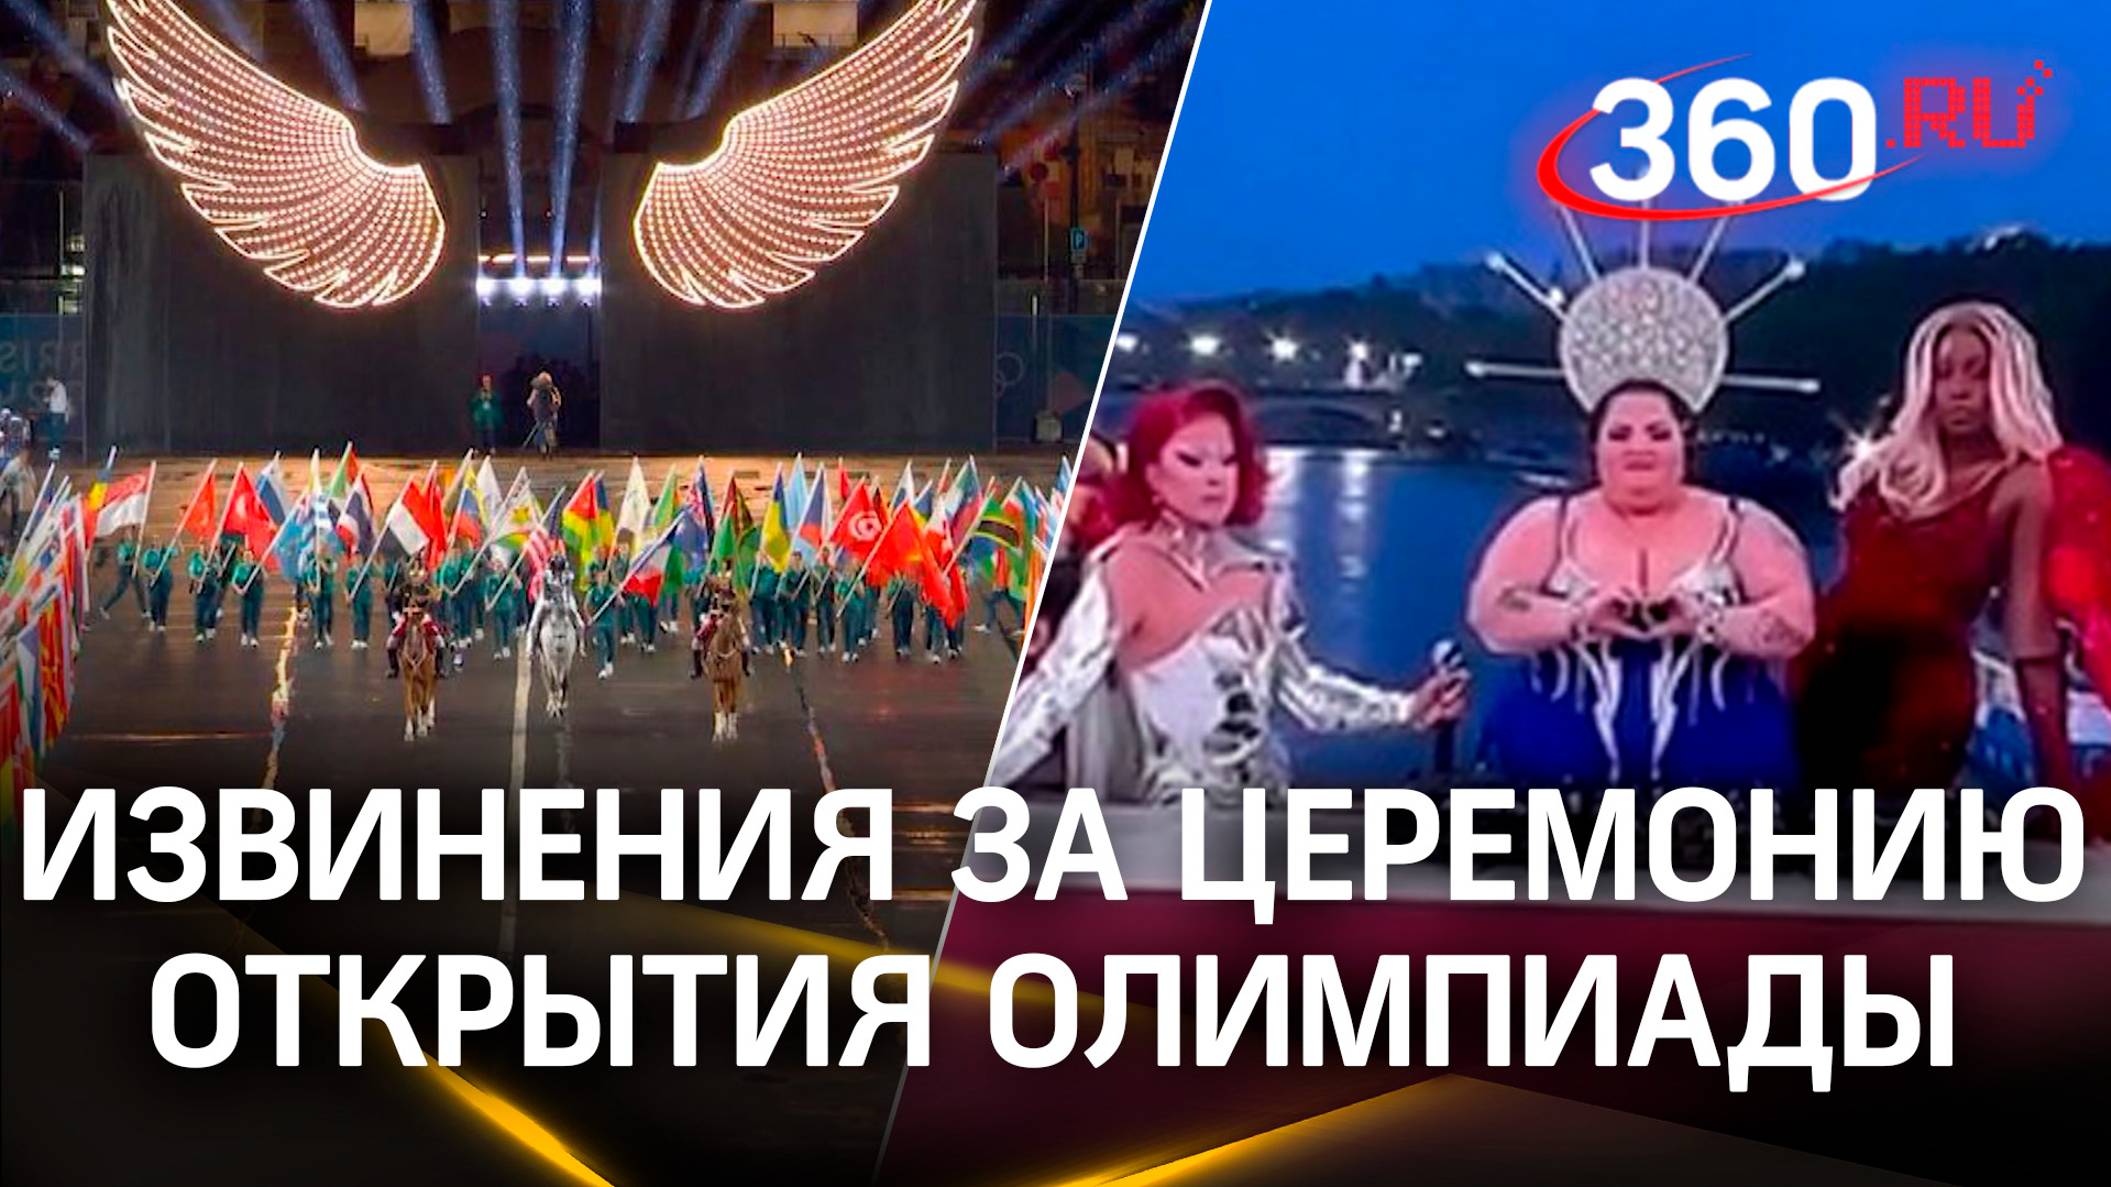 Организаторы церемонии открытия Олимпиады извинились за пародию на «Тайную вечерю»